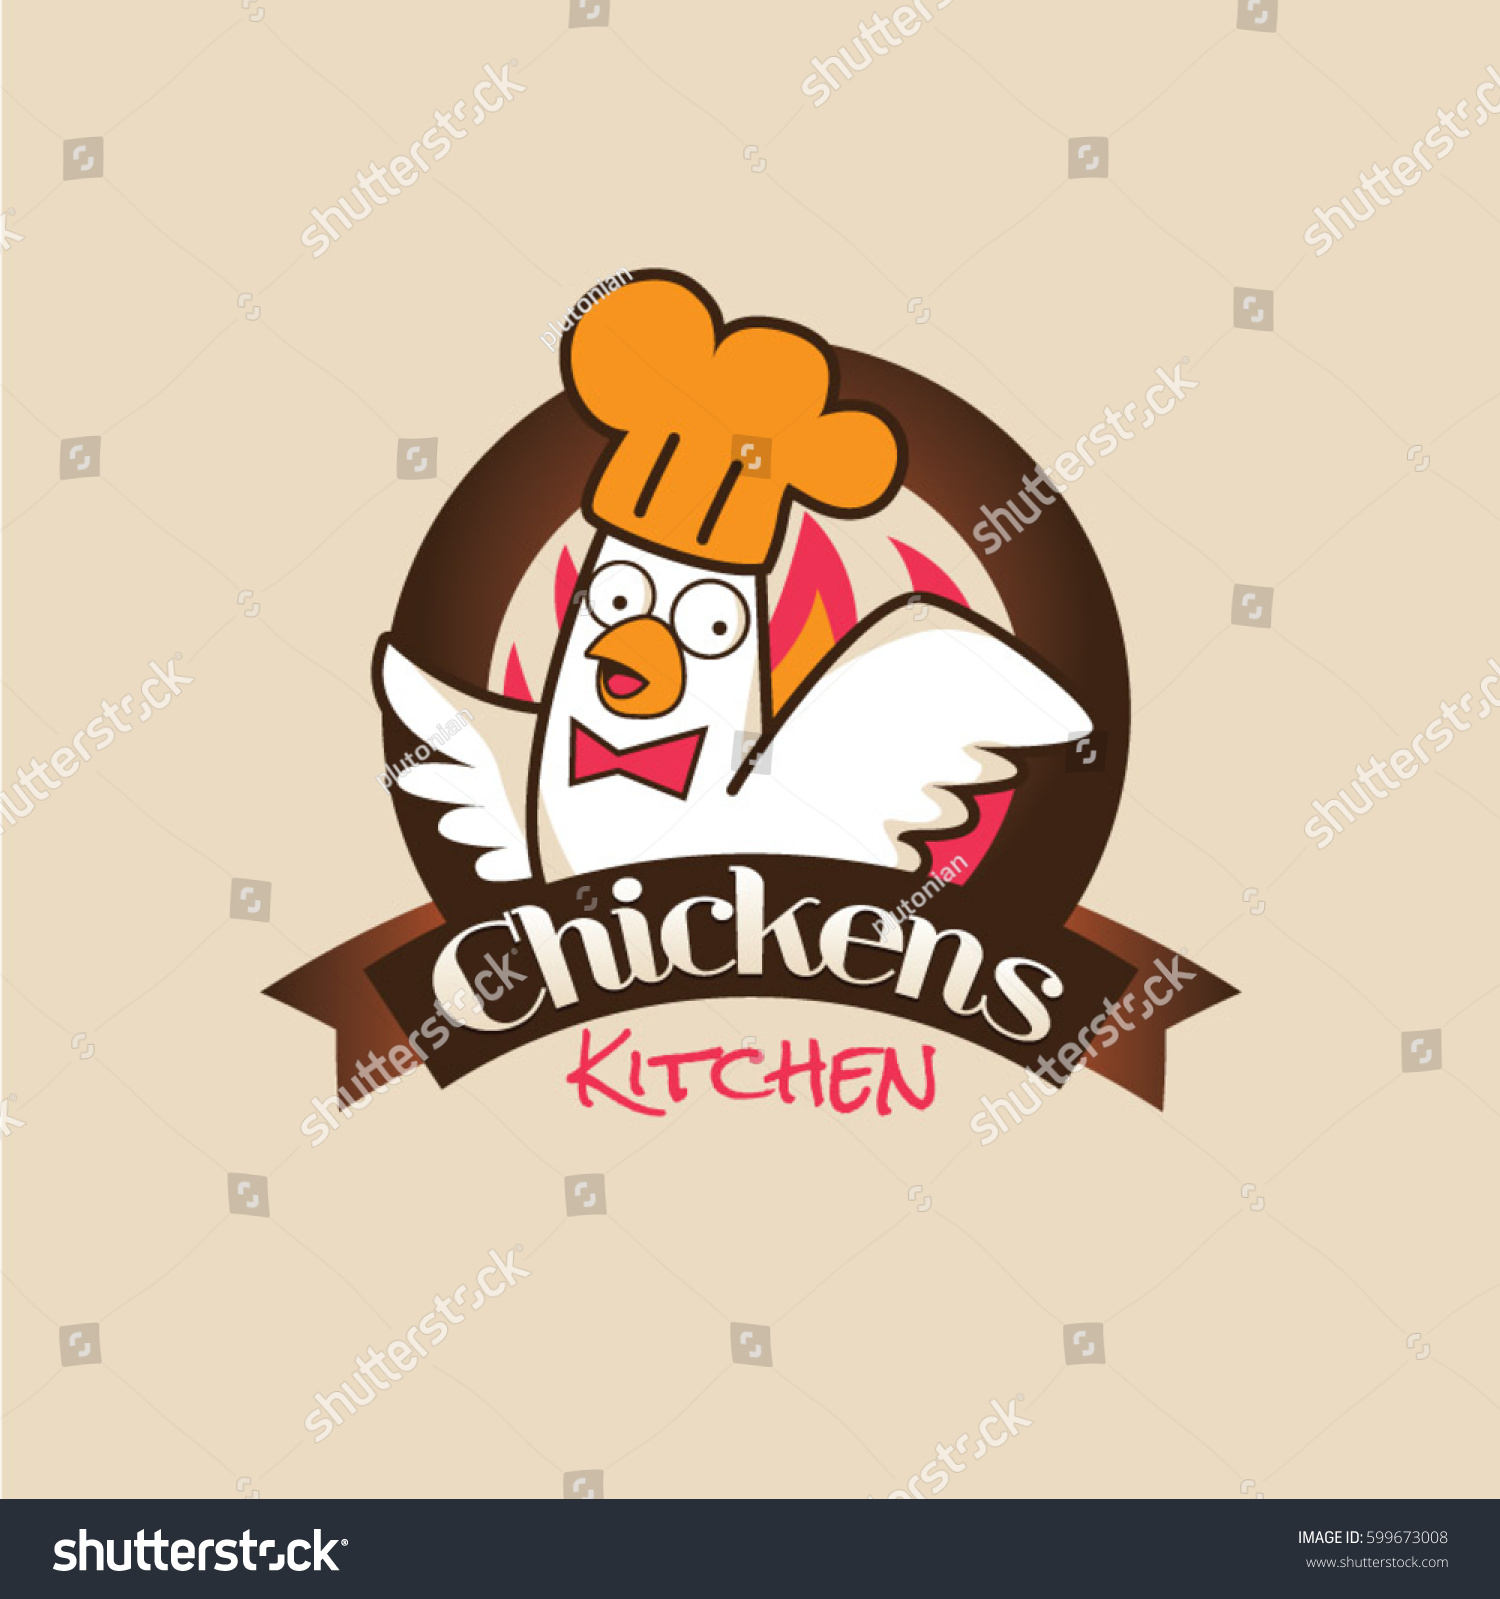 Chicken Kitchen Restaurant Logo Symbol Stock Vector 599673008